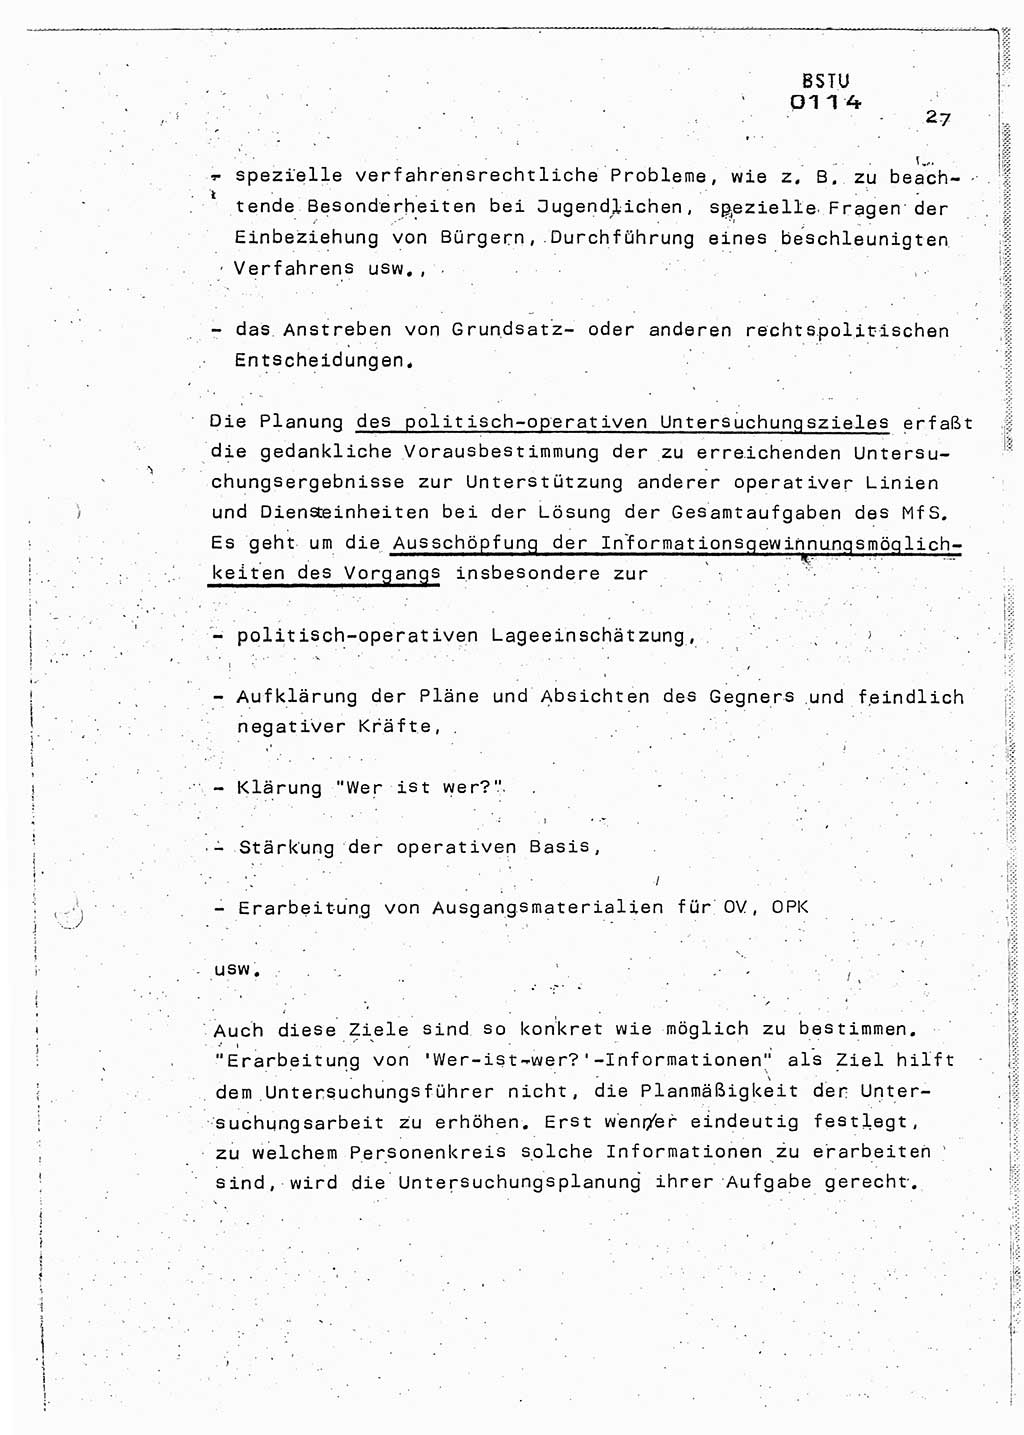 Lektion Ministerium für Staatssicherheit (MfS) [Deutsche Demokratische Republik (DDR)], Hauptabteilung (HA) Ⅸ, Berlin 1987, Seite 27 (Lekt. Pln. Bearb. EV MfS DDR HA Ⅸ /87 1987, S. 27)